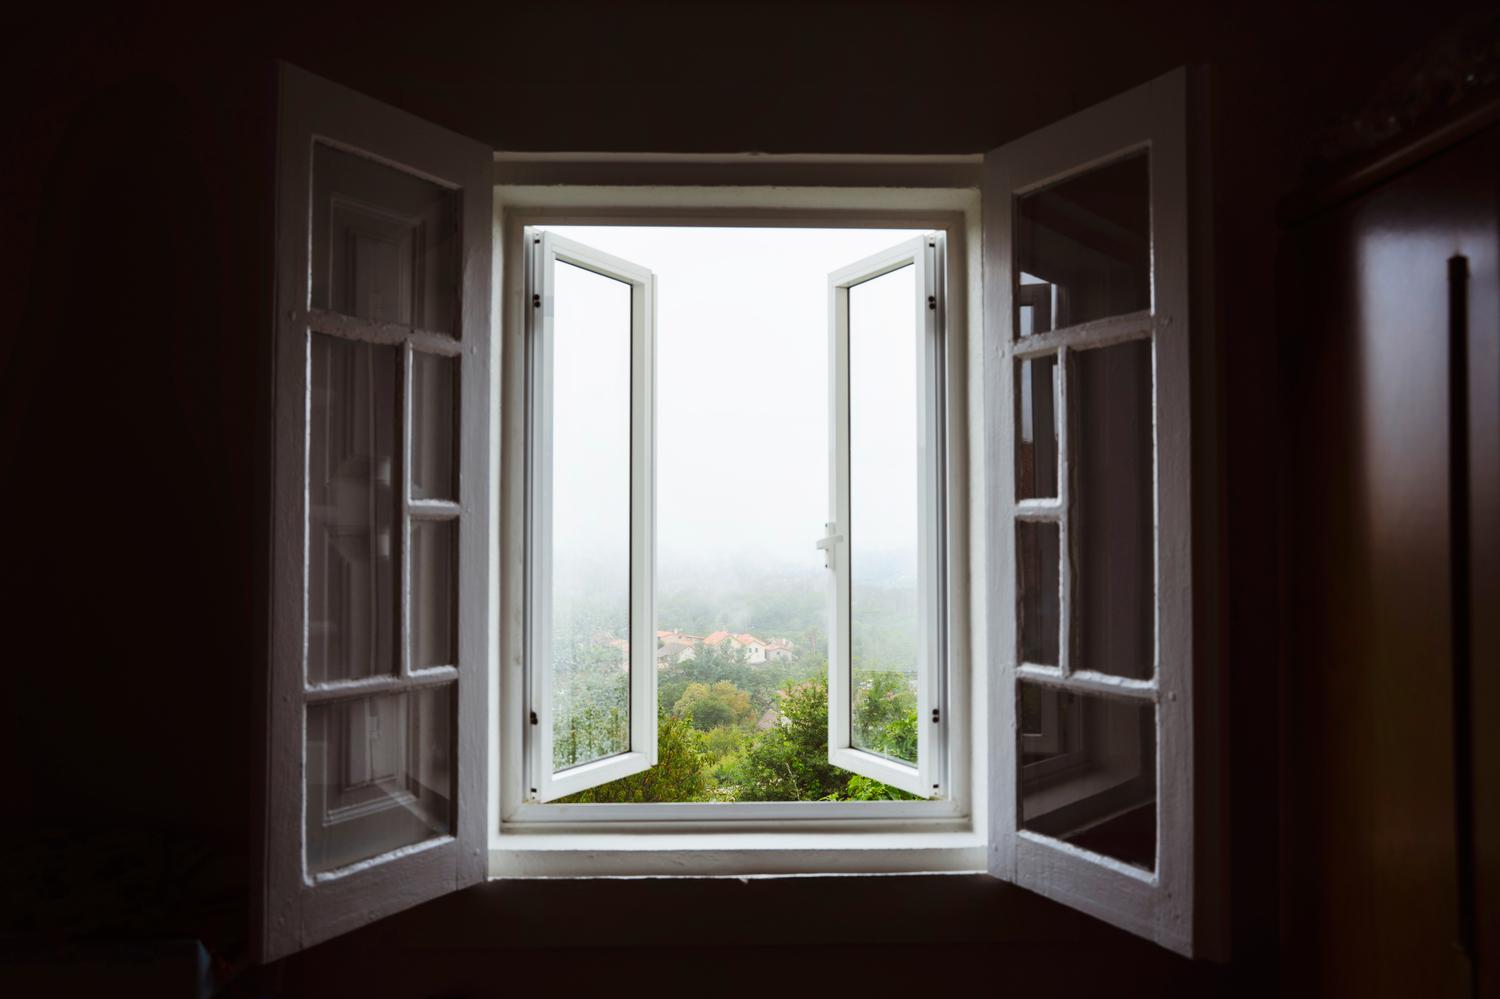 Естественной вентиляцией можно назвать&nbsp;отсутствие специального оборудования в доме, когда проветривание помещений осуществляется с помощью открытых окон и дверей